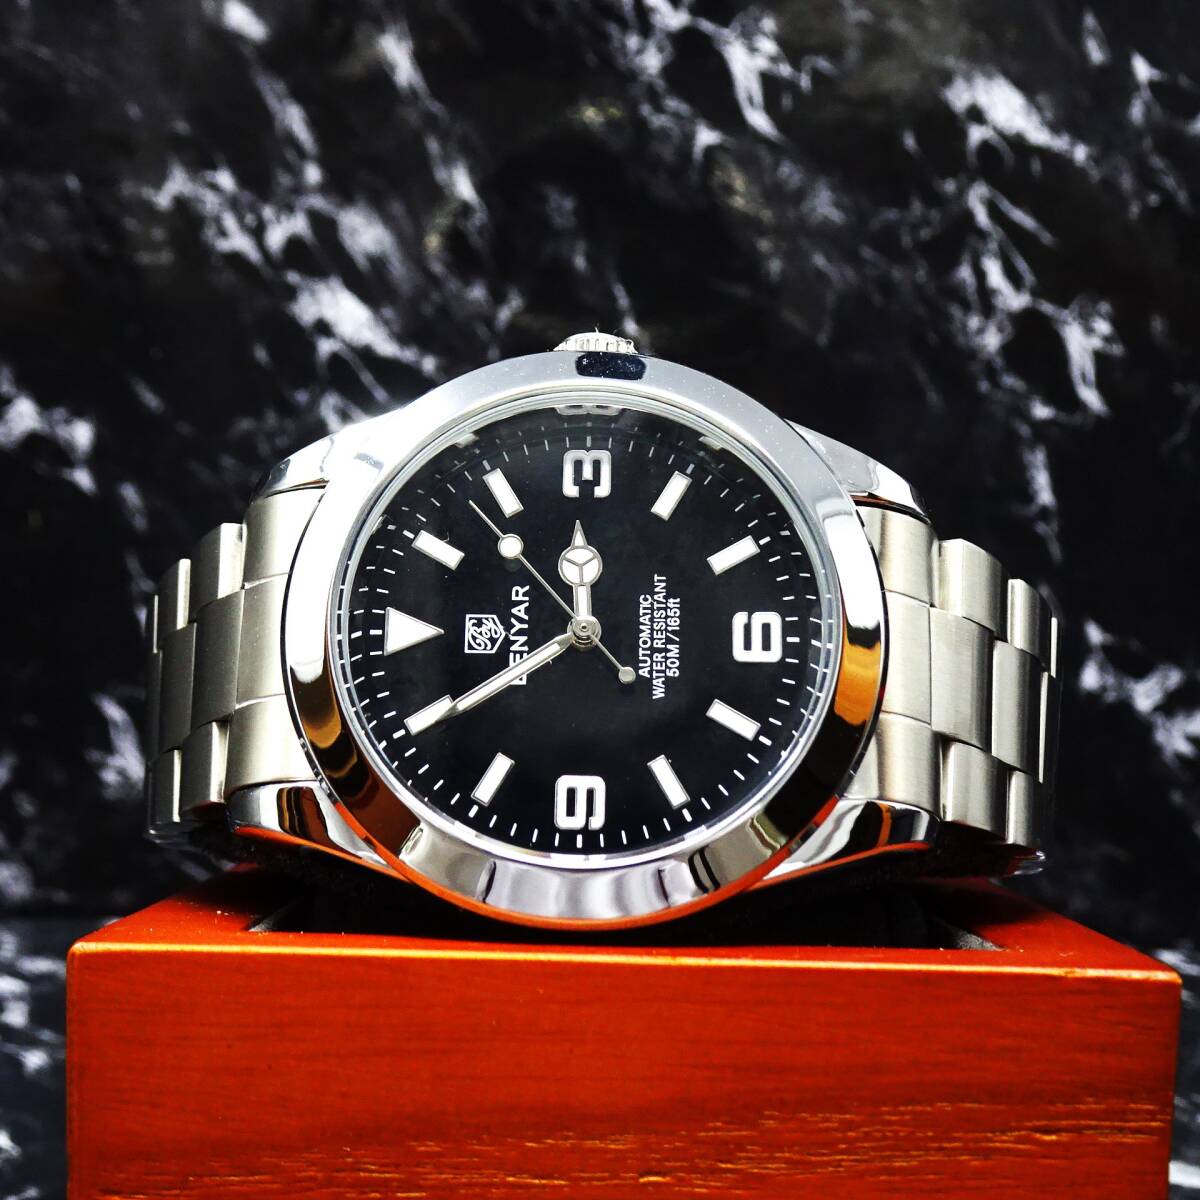 送料無料〓新品〓 BENYARブランド・369インデックス・オマージュウォッチ腕時計・メカニカル機械式・フルステンレス製モデル_画像1